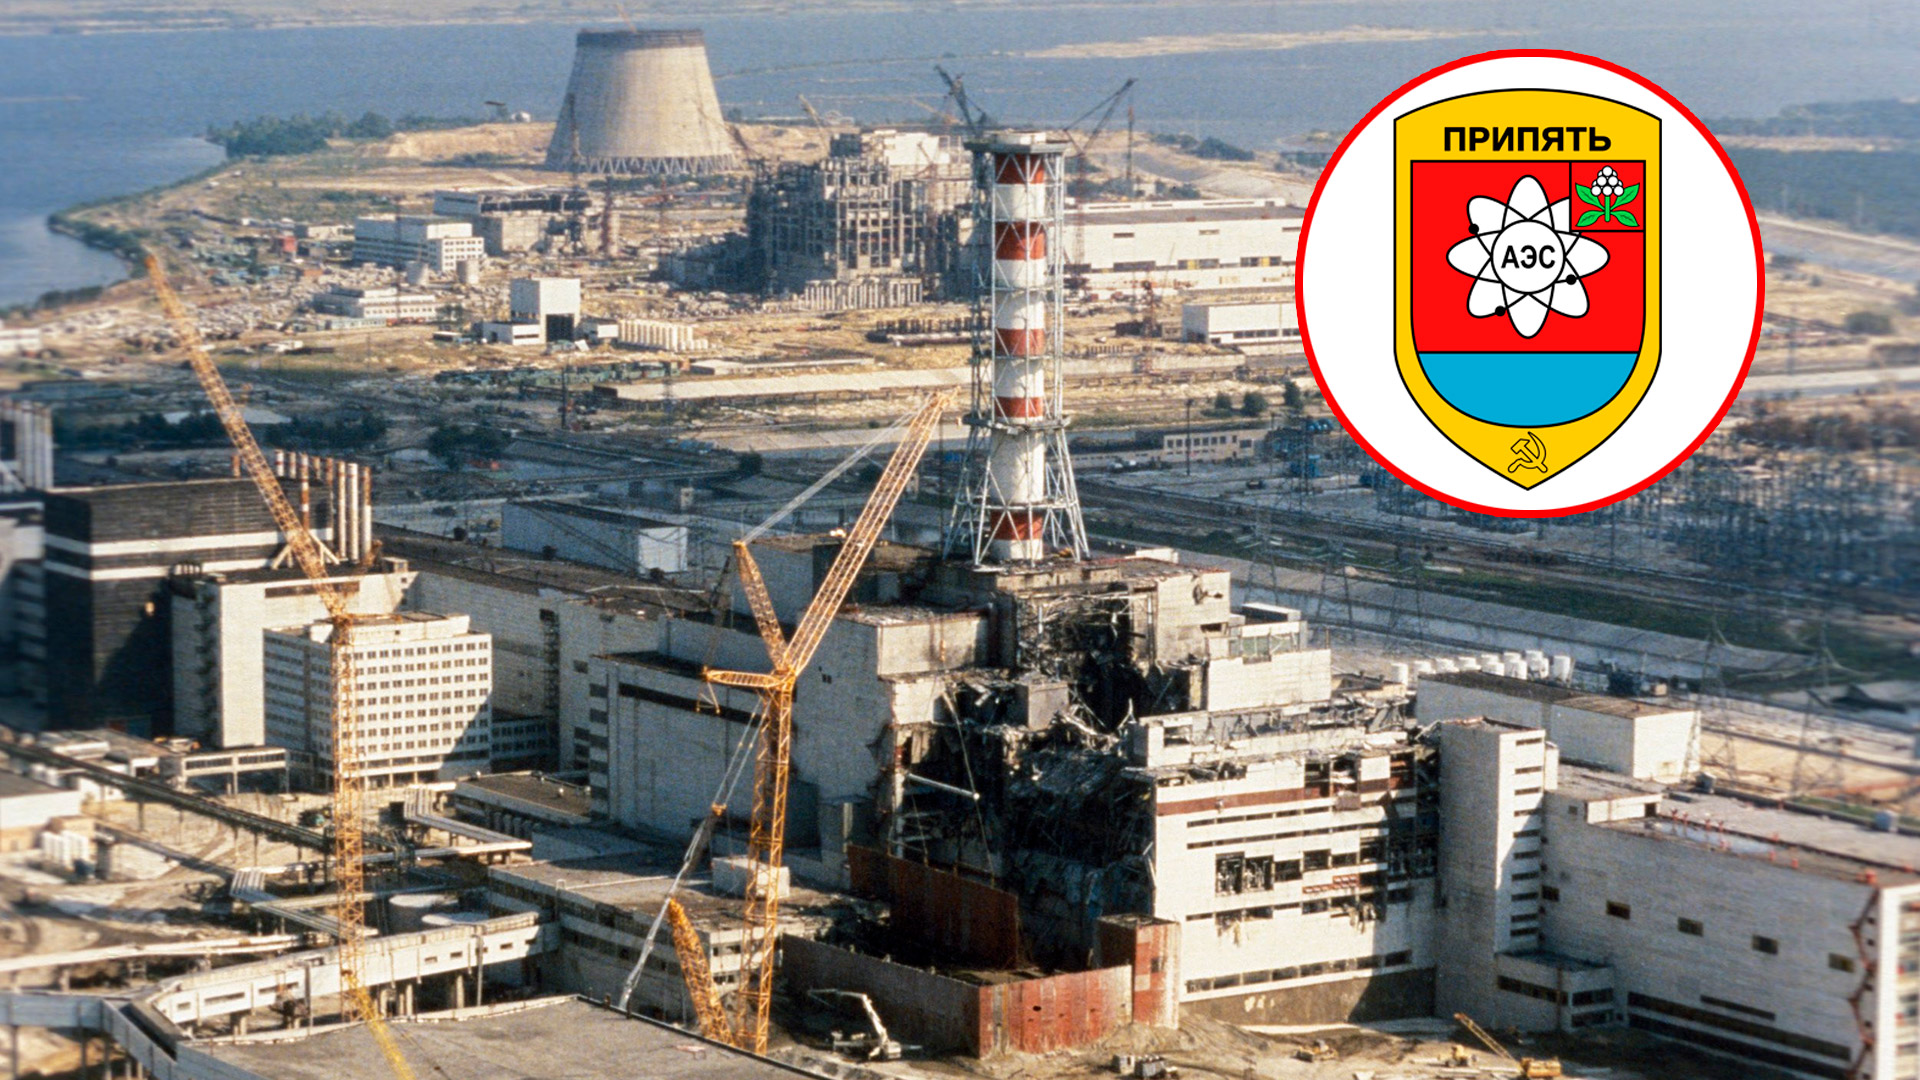 La central atómica de Chernobyl en Ucrania